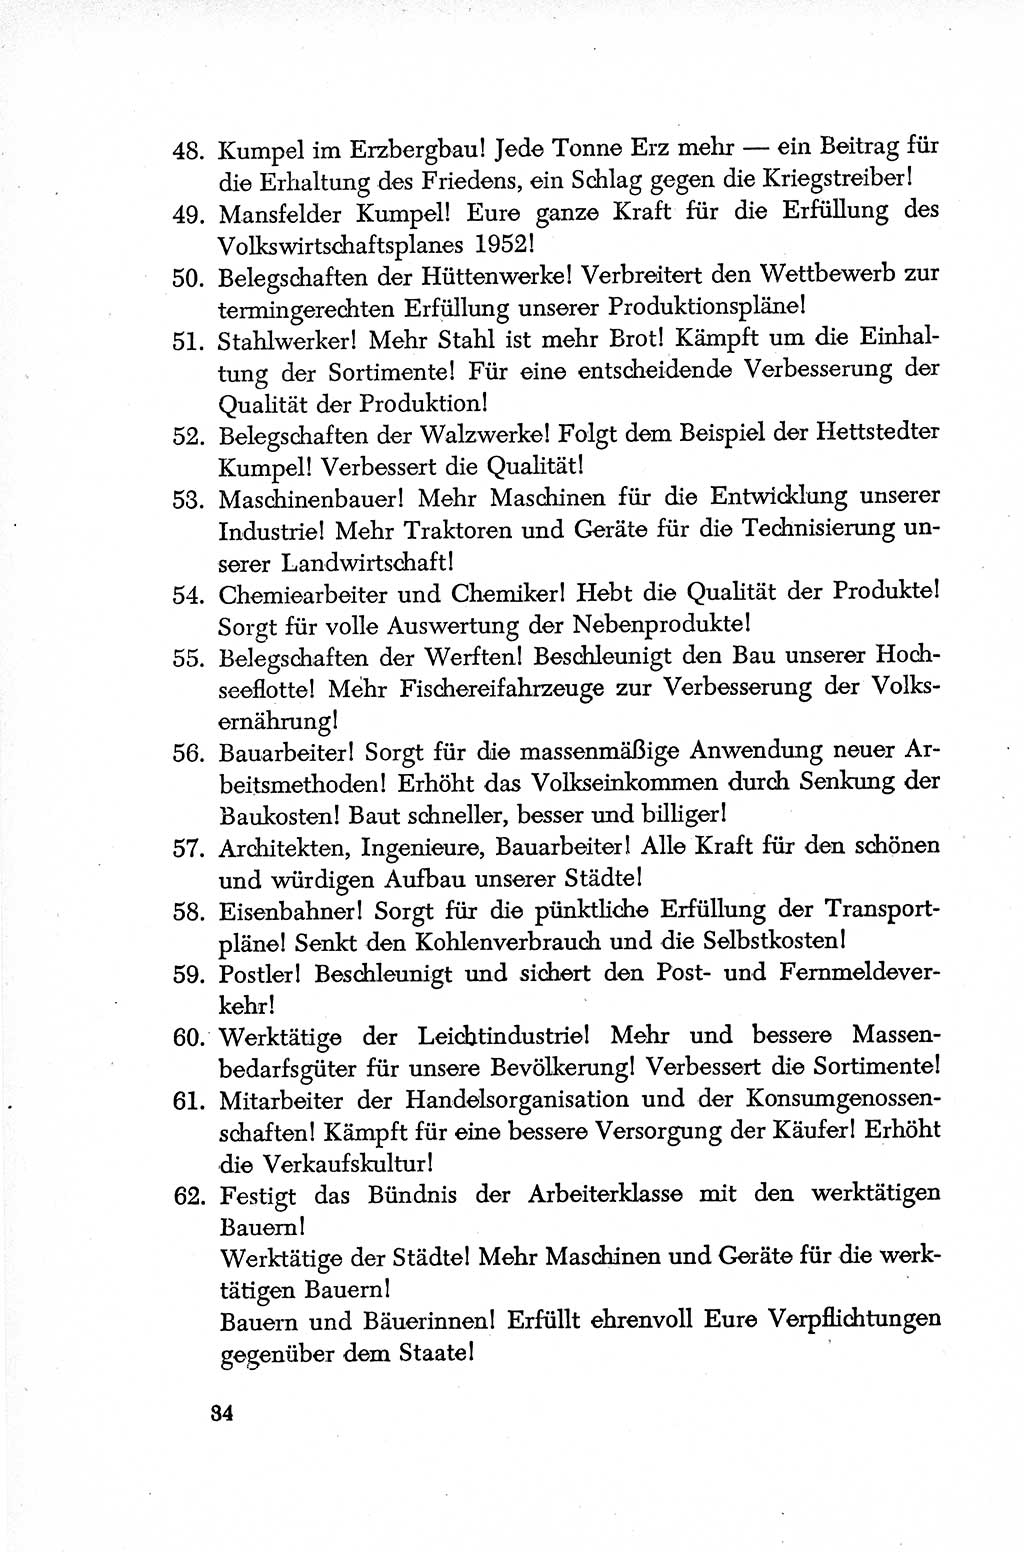 Dokumente der Sozialistischen Einheitspartei Deutschlands (SED) [Deutsche Demokratische Republik (DDR)] 1952-1953, Seite 34 (Dok. SED DDR 1952-1953, S. 34)